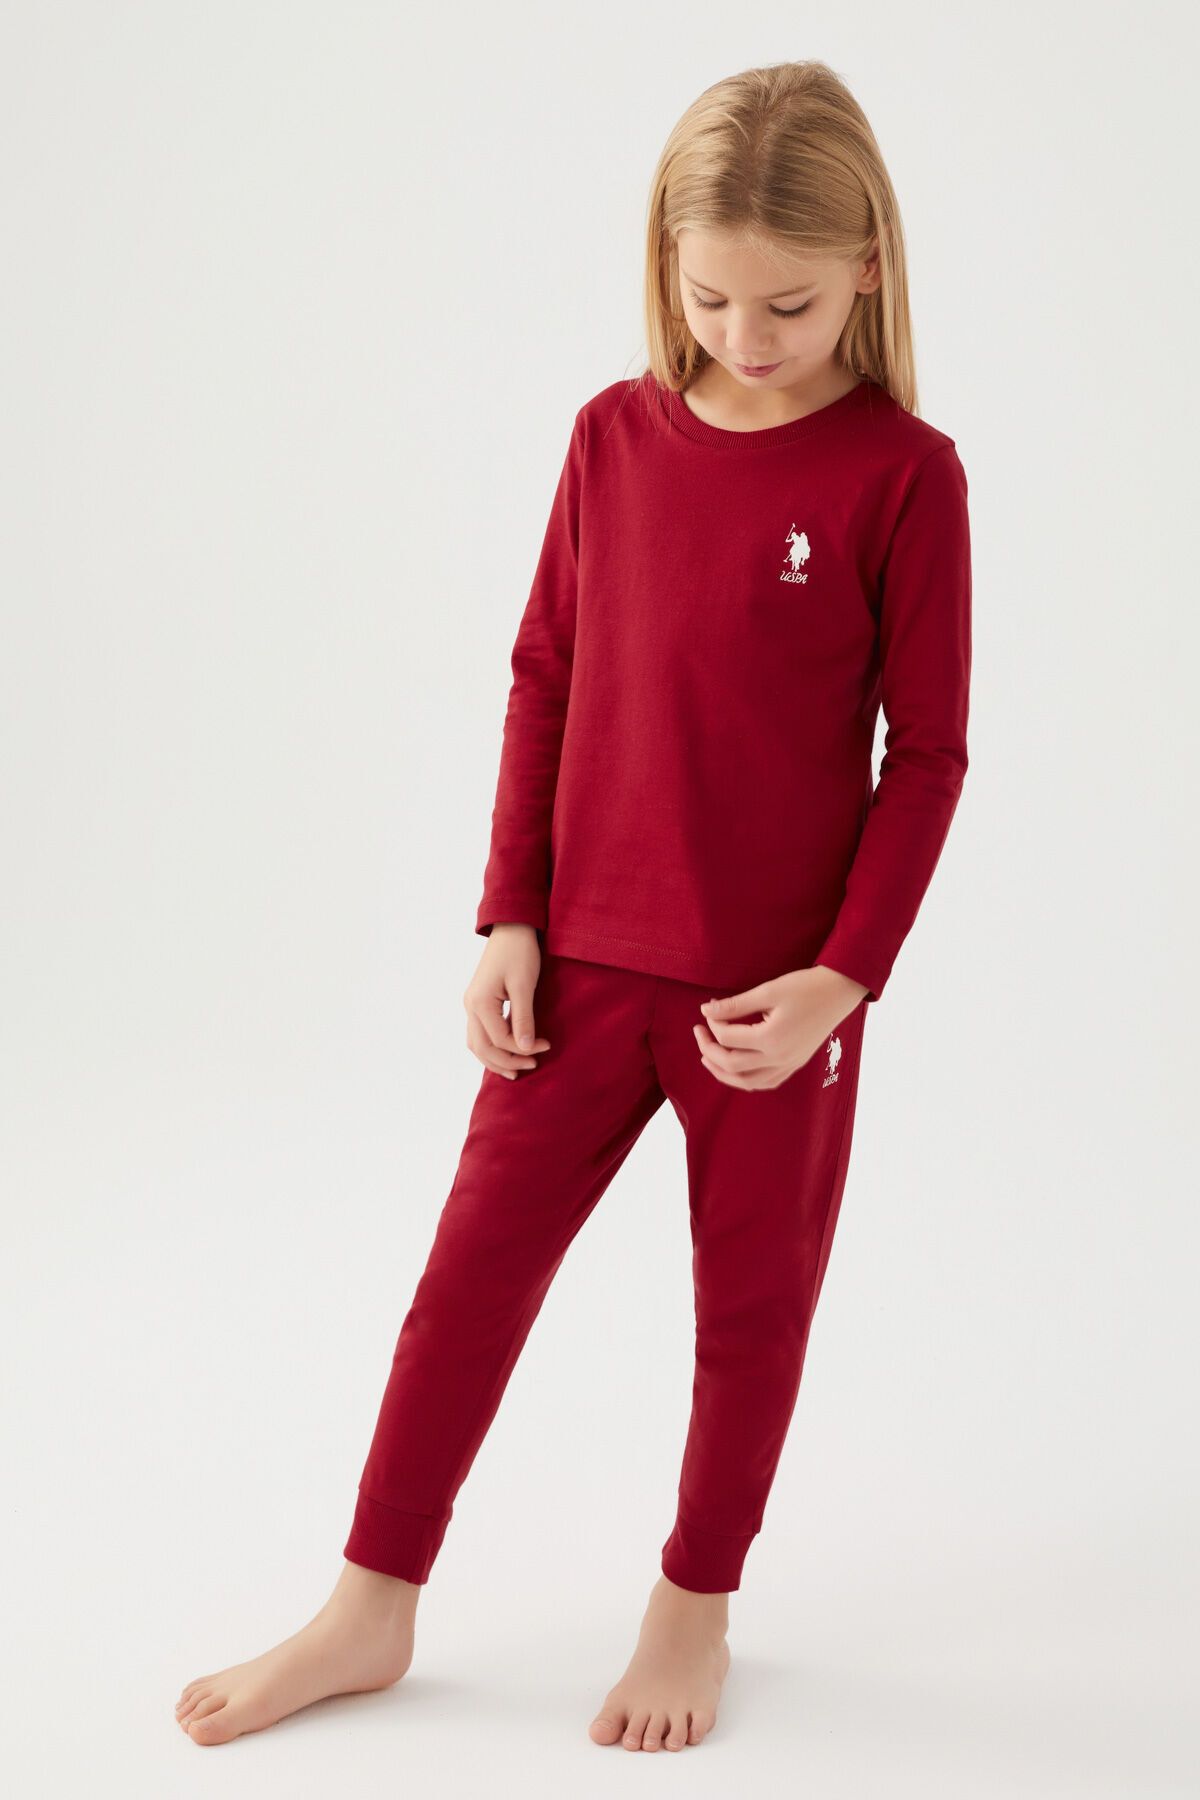 U.S. Polo Assn. Kız Çocuk Bordo Pijama Takımı